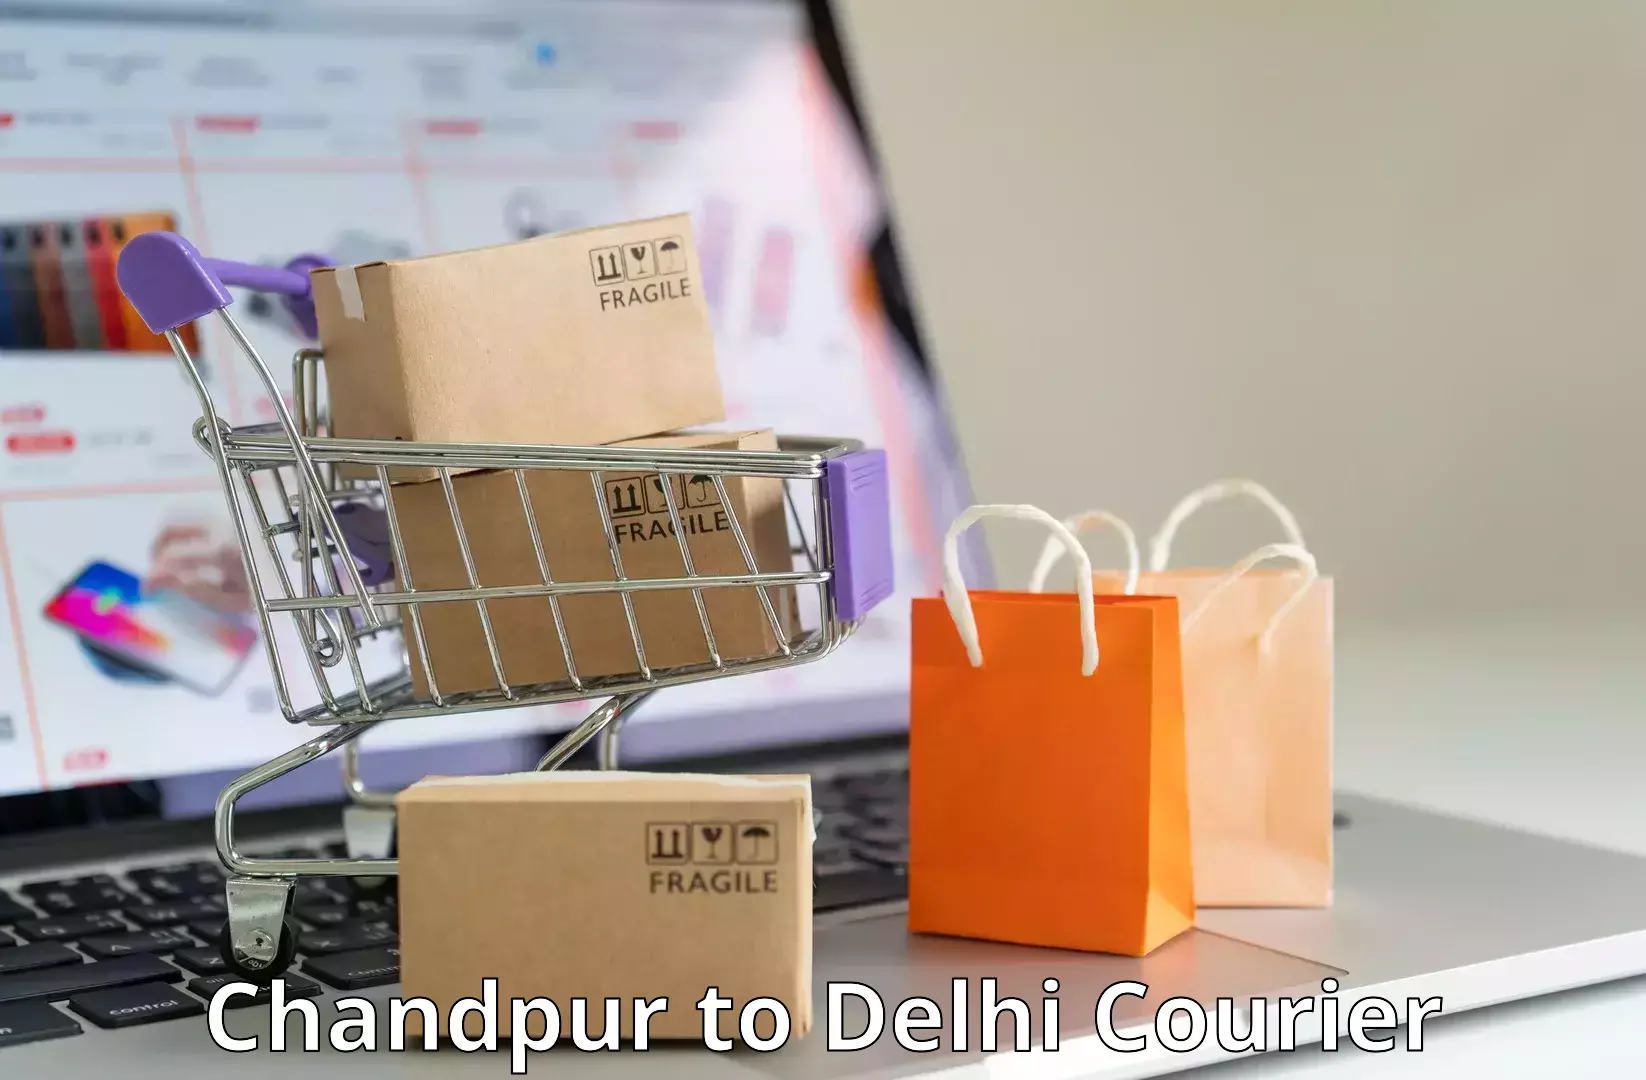 E-commerce fulfillment Chandpur to Delhi